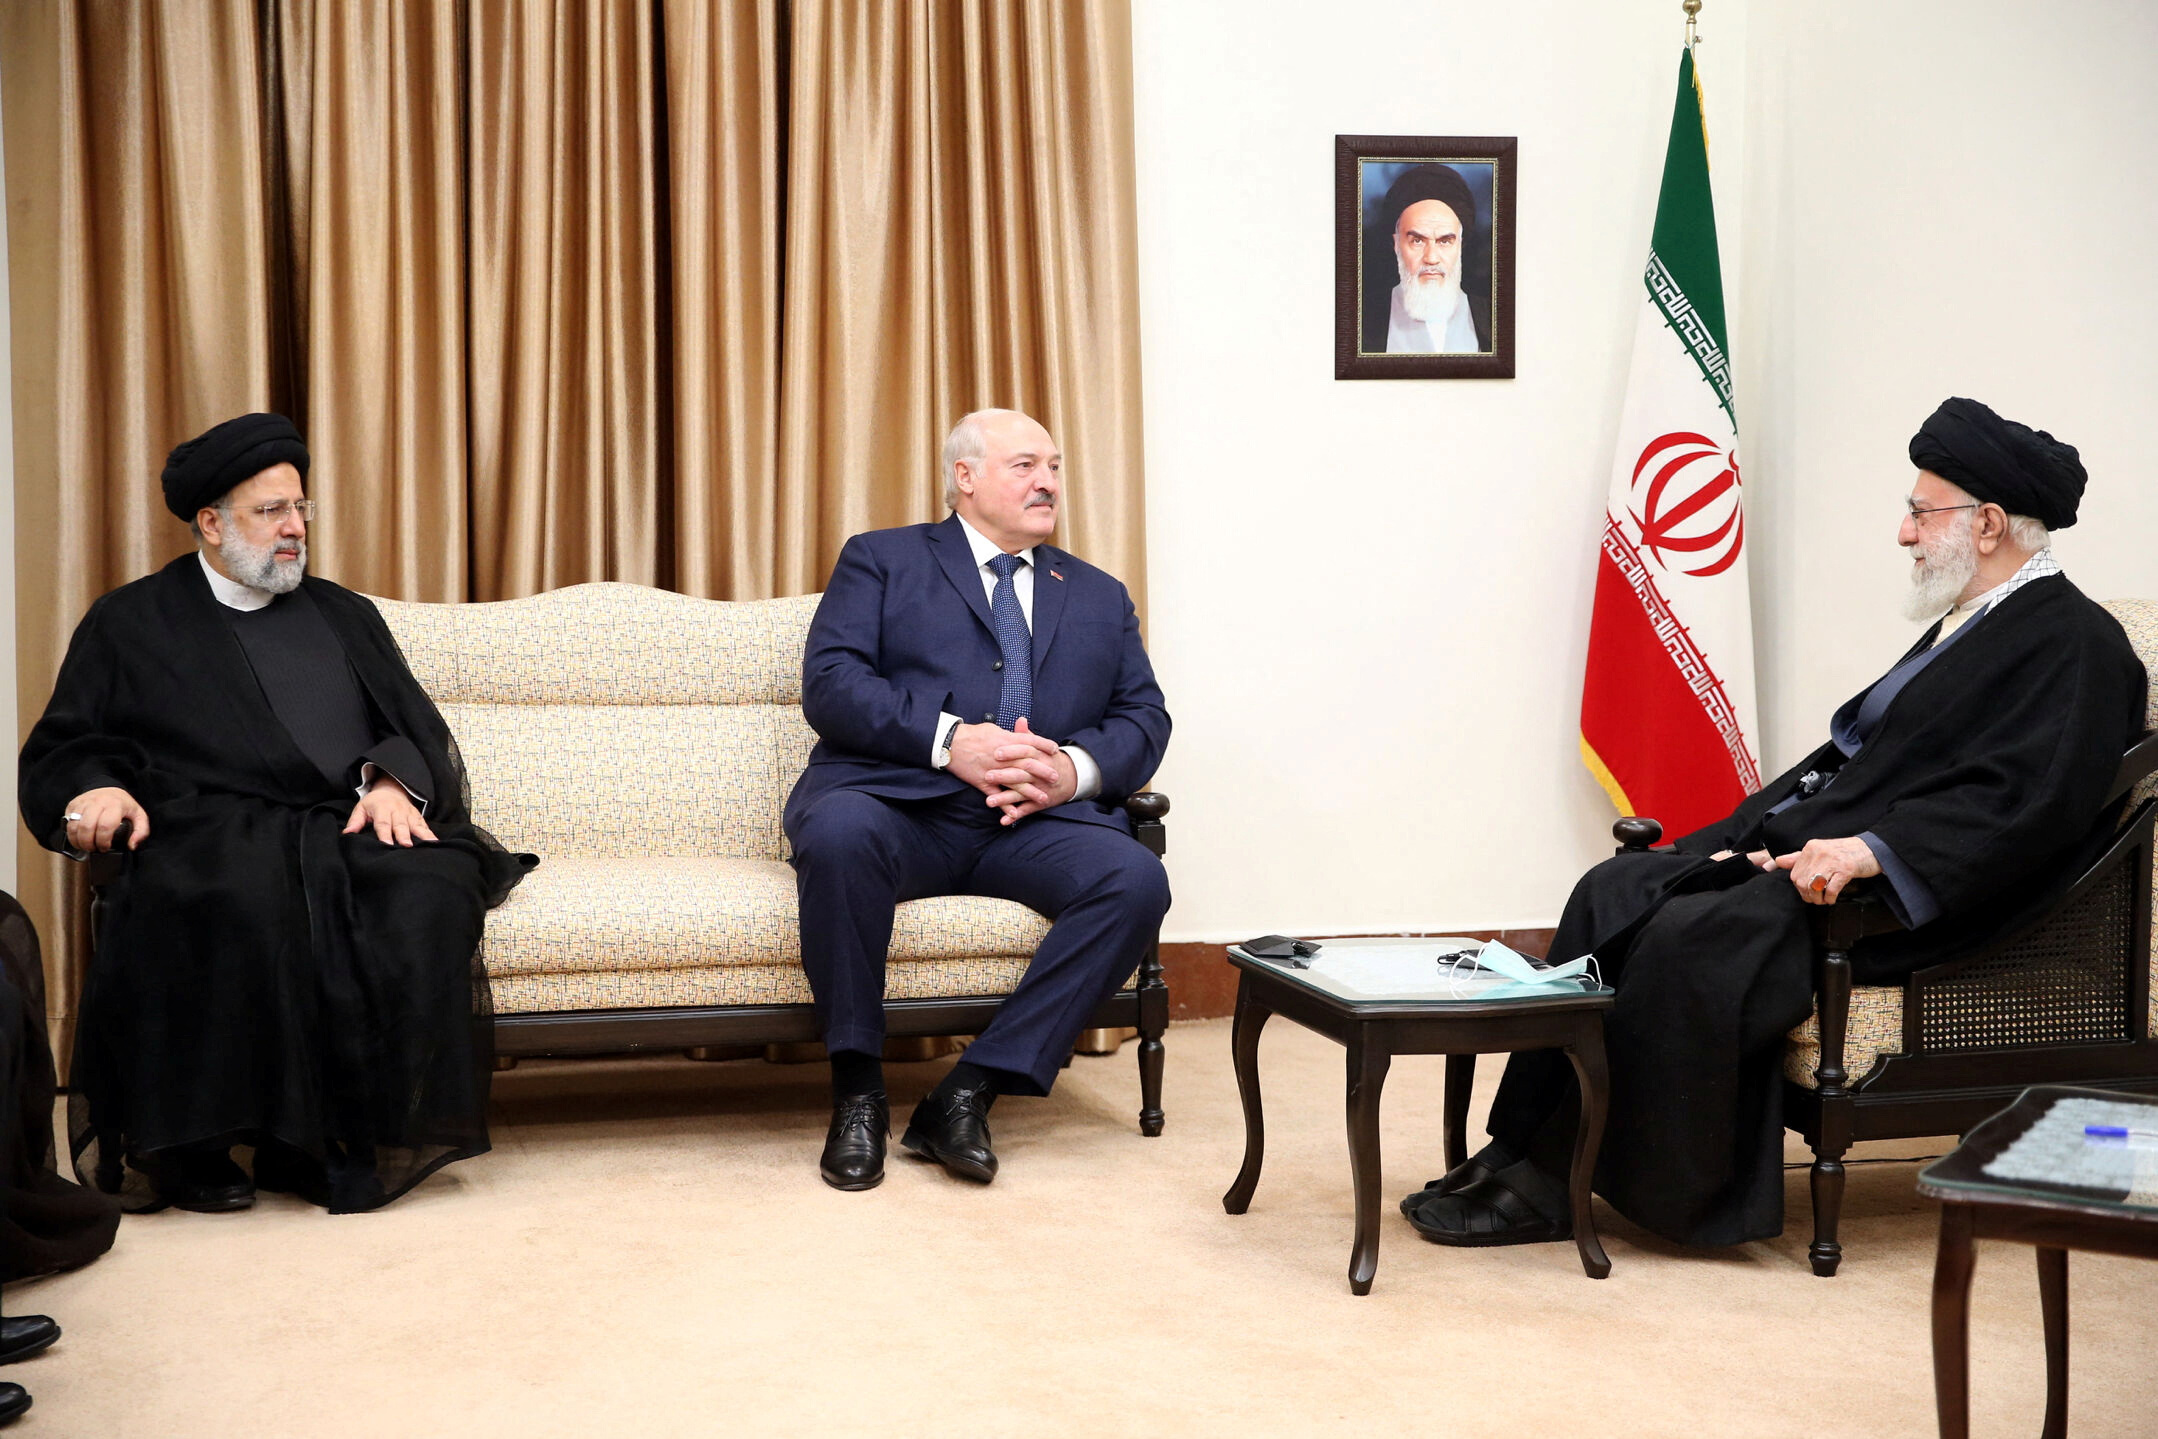 علي خامنئي (يسار الصورة) المرشد الأعلى في إيران يلتقي الرئيس البيلاروسي الكساند لوكاتشنكو (في الوسط) بحضور الرئيس الإيراني إبراهيم رئيسي بتاريخ 13 مارس 2023 